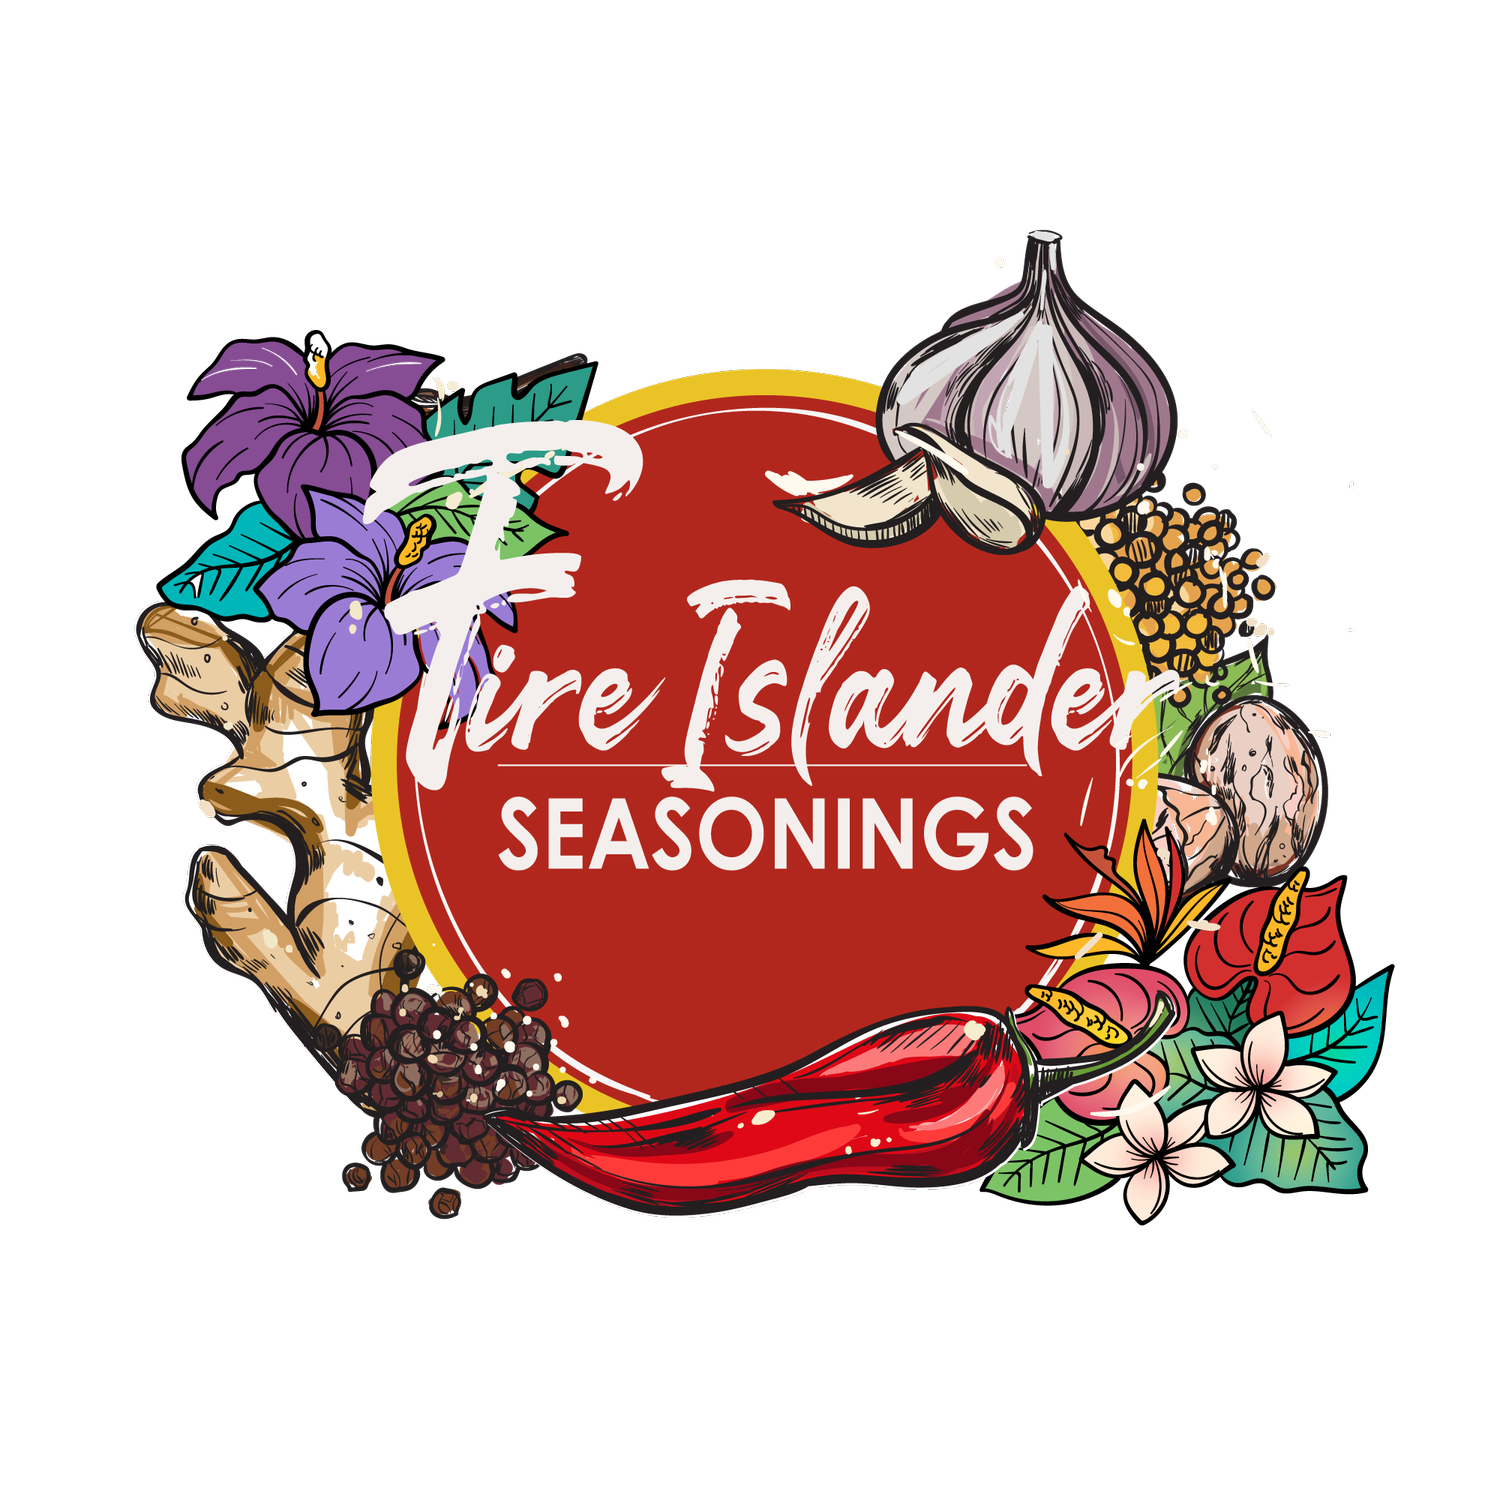 Fire Islander Seasonings